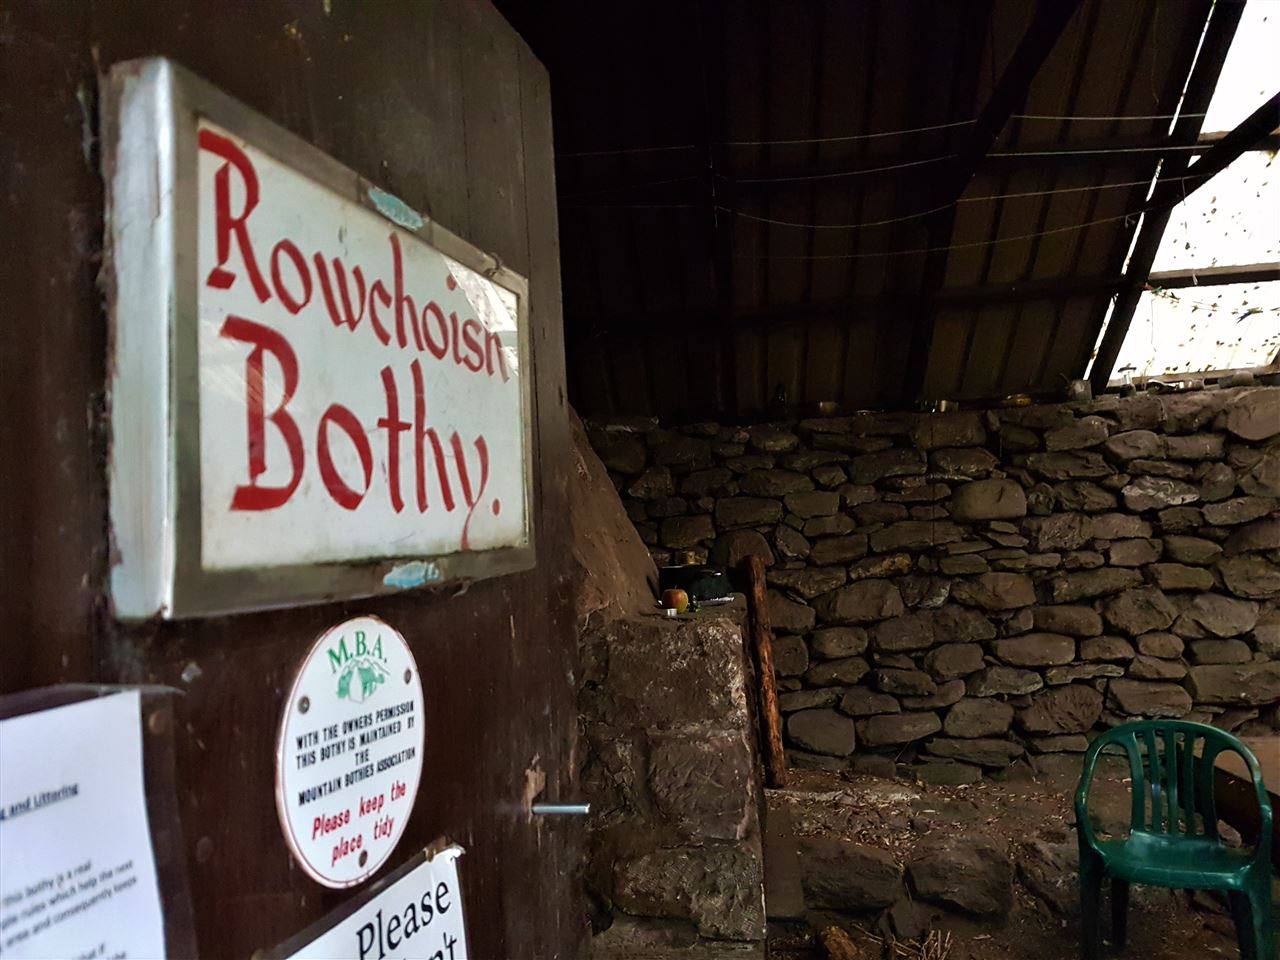 Rowchoish Bothy auf dem West Highland Way - Bothies in Schottland